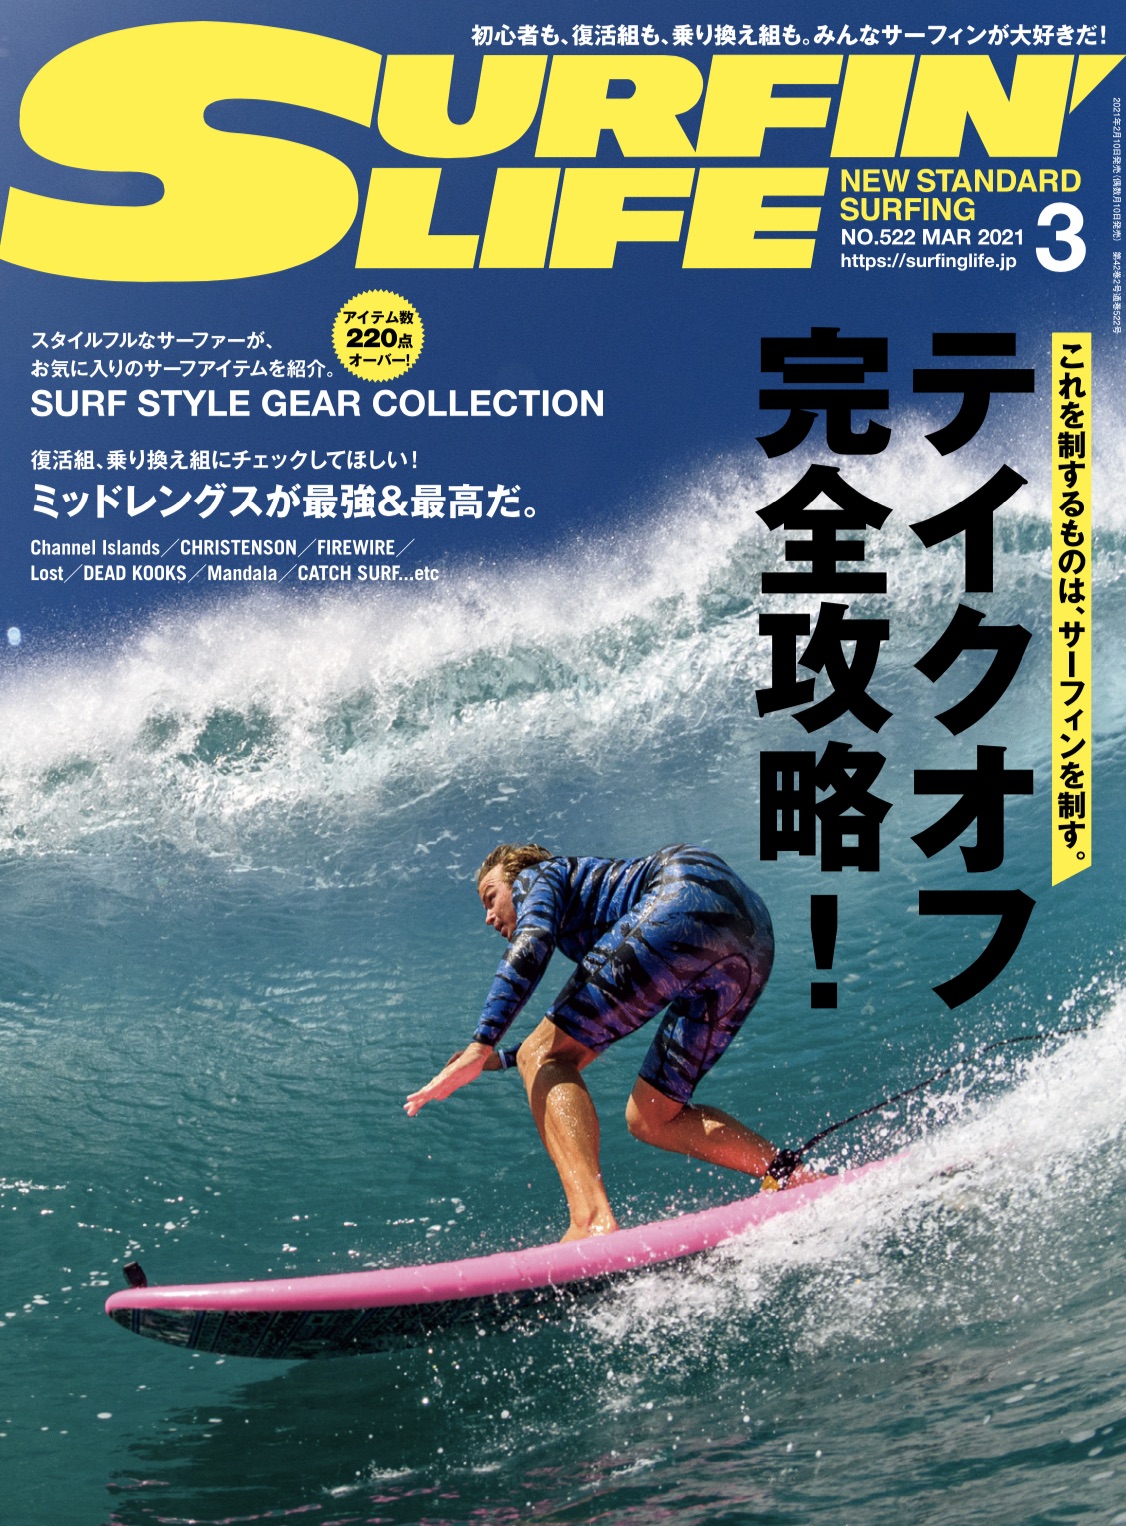 サーフィンのキホンのキ「テイクオフ」を徹底解説！SURFIN'LIFE 3月号 特集内容 表紙：ジェイミー・オブライエン